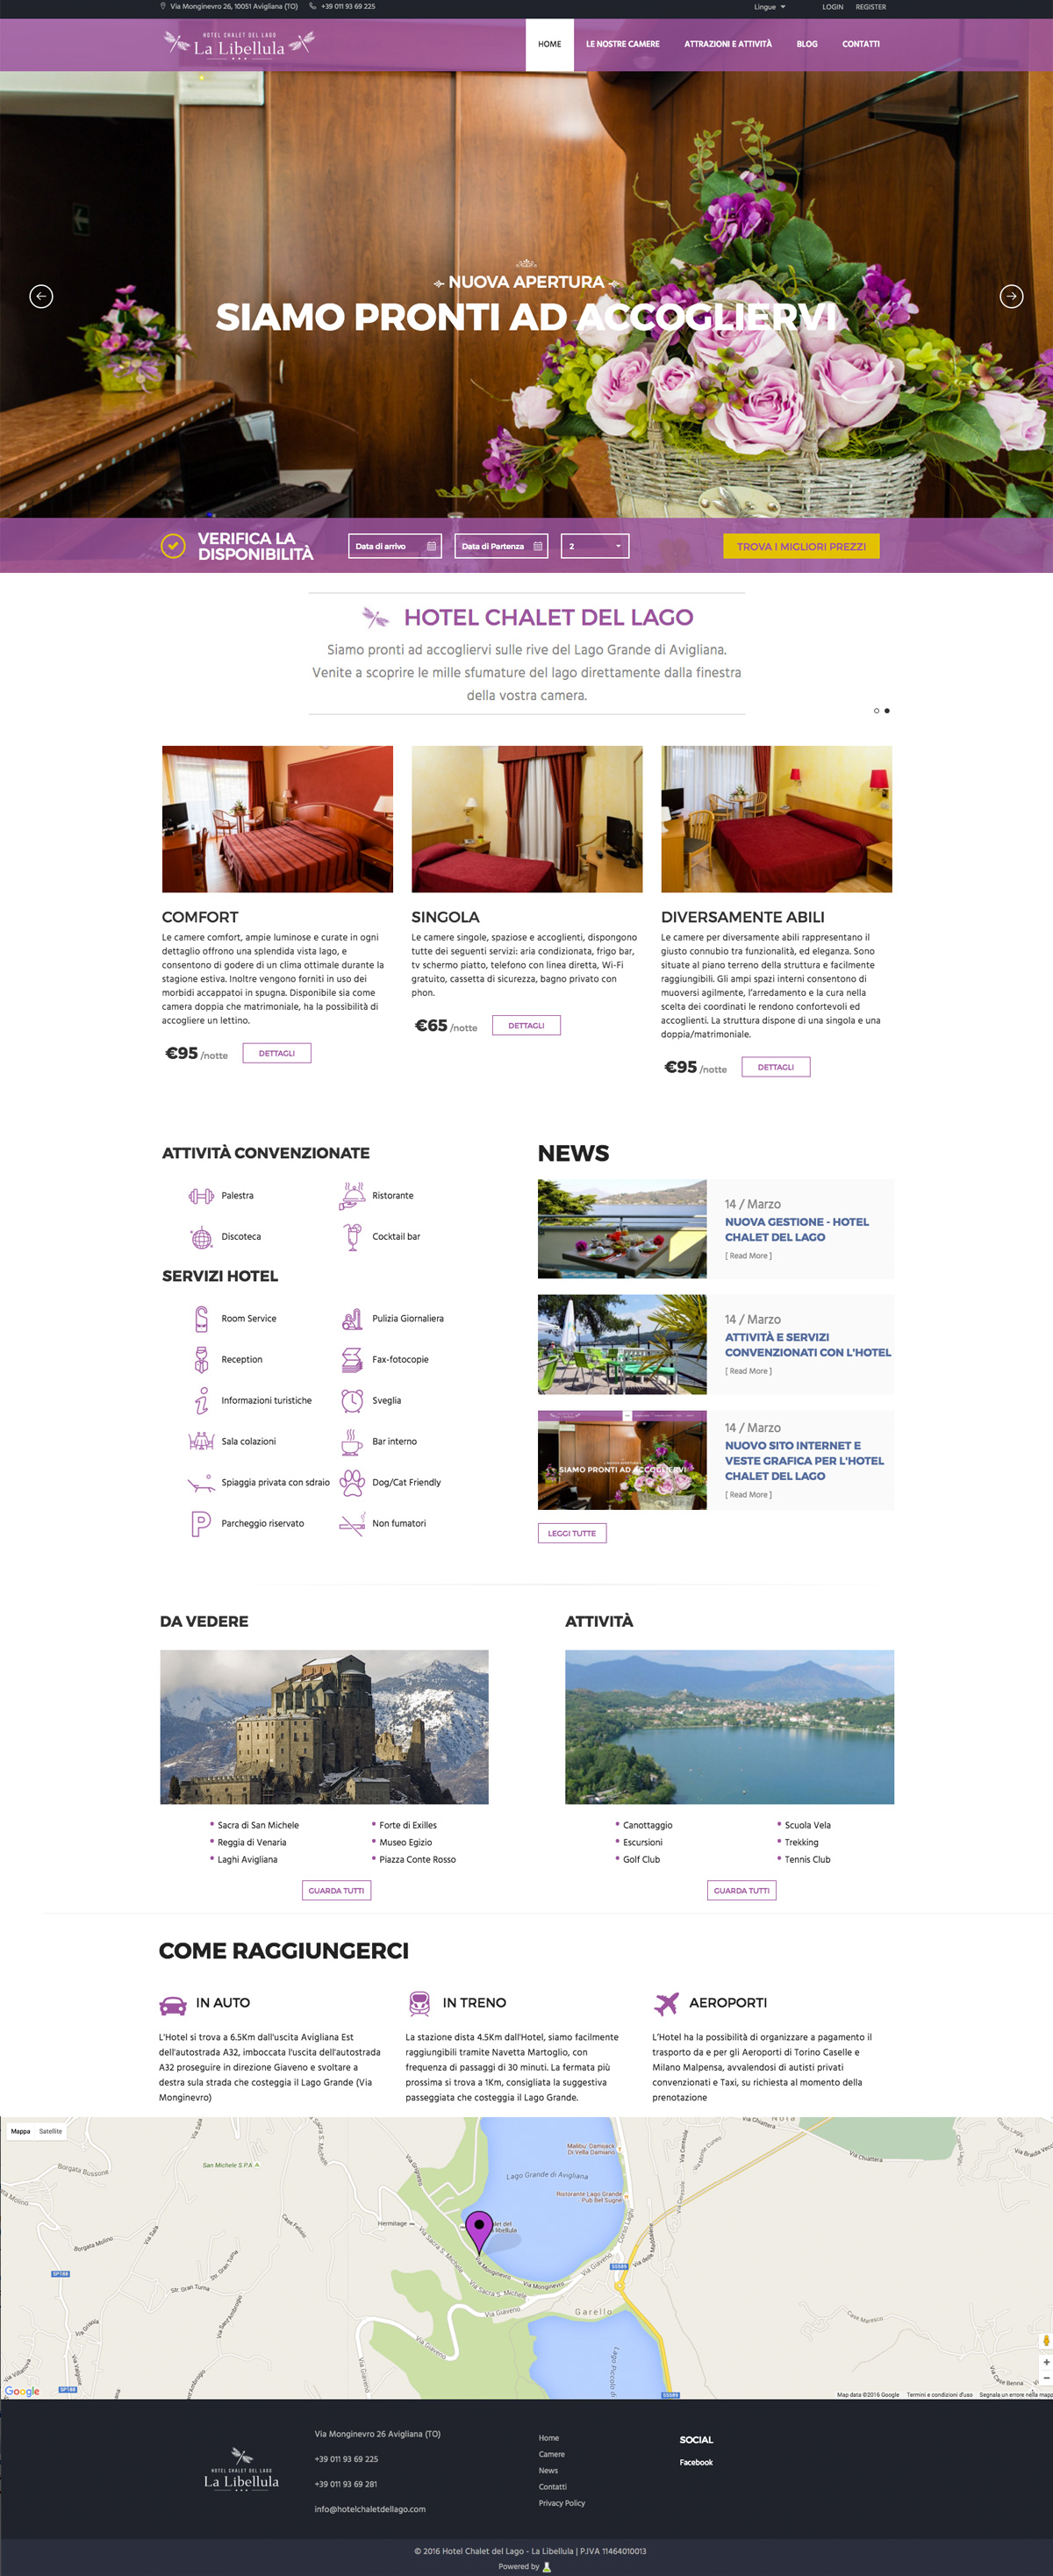 Home page hotel chalet del lago la libellula sito web